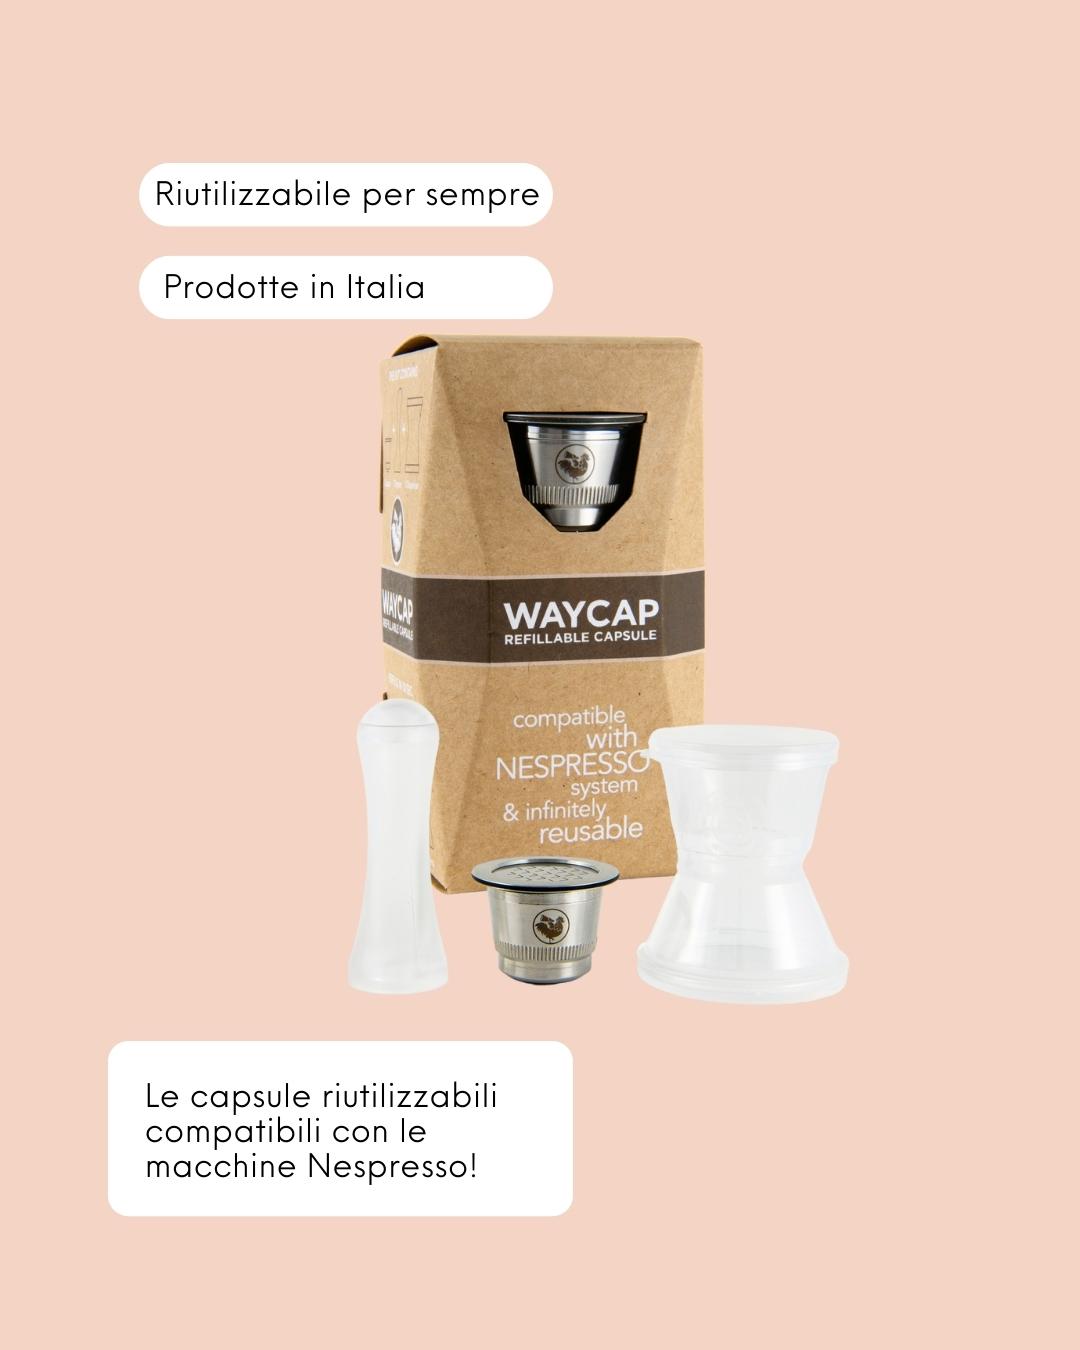 WayCap Capsule Riutilizzabili Nespresso Classico 1 Capsula